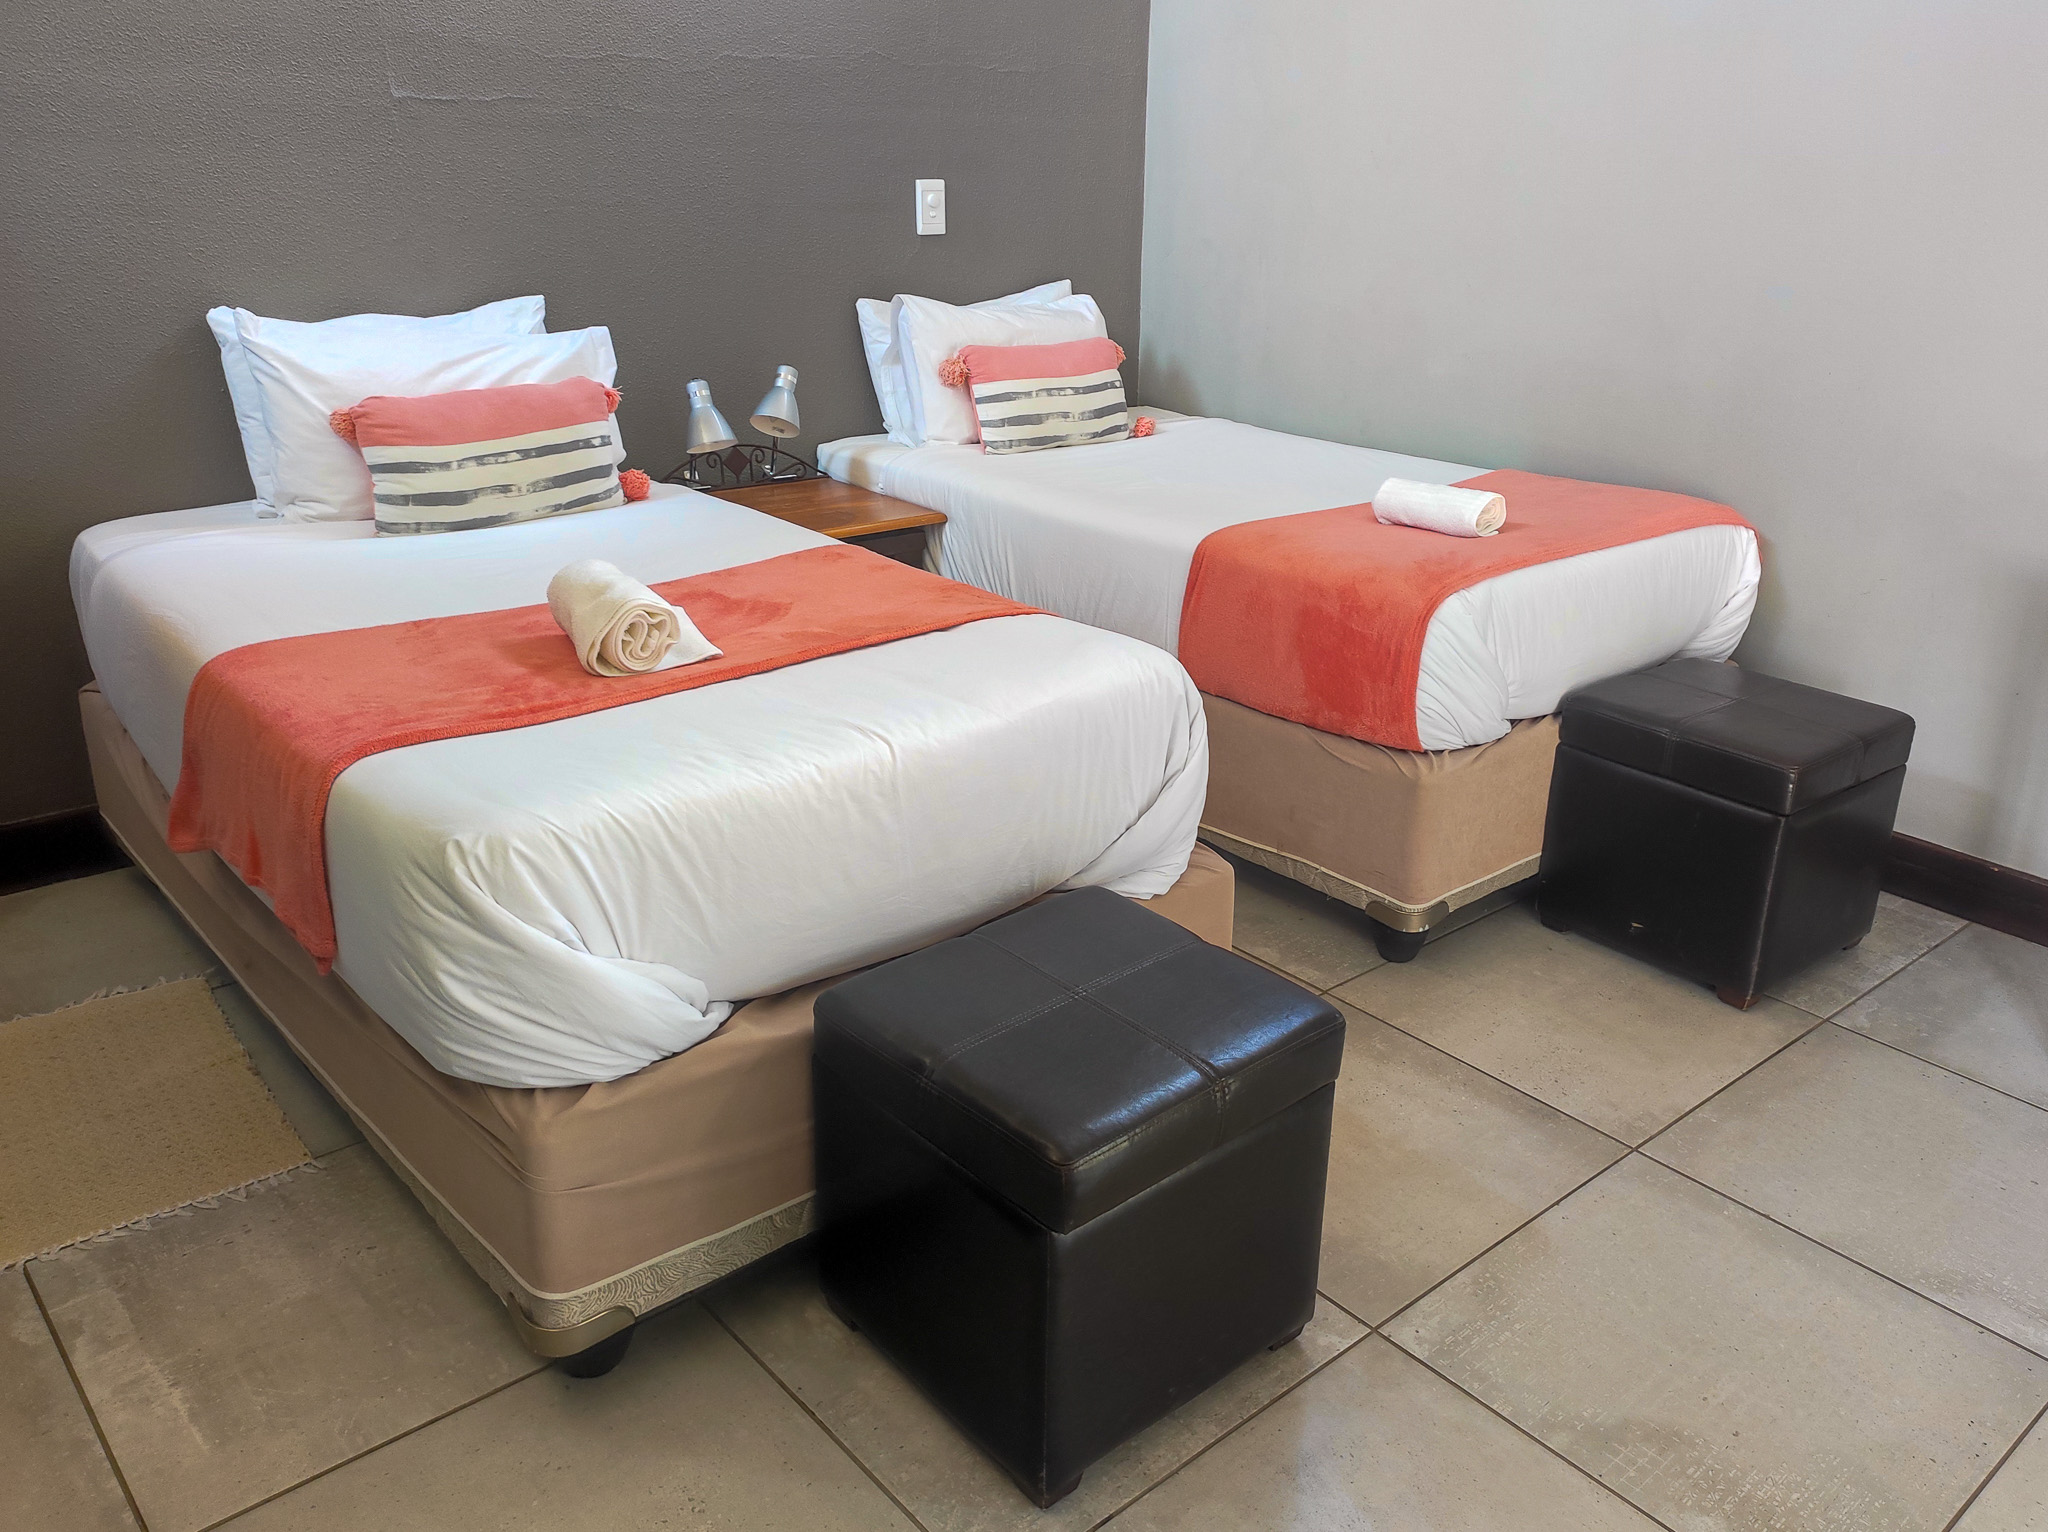 Hotels in Windhoek